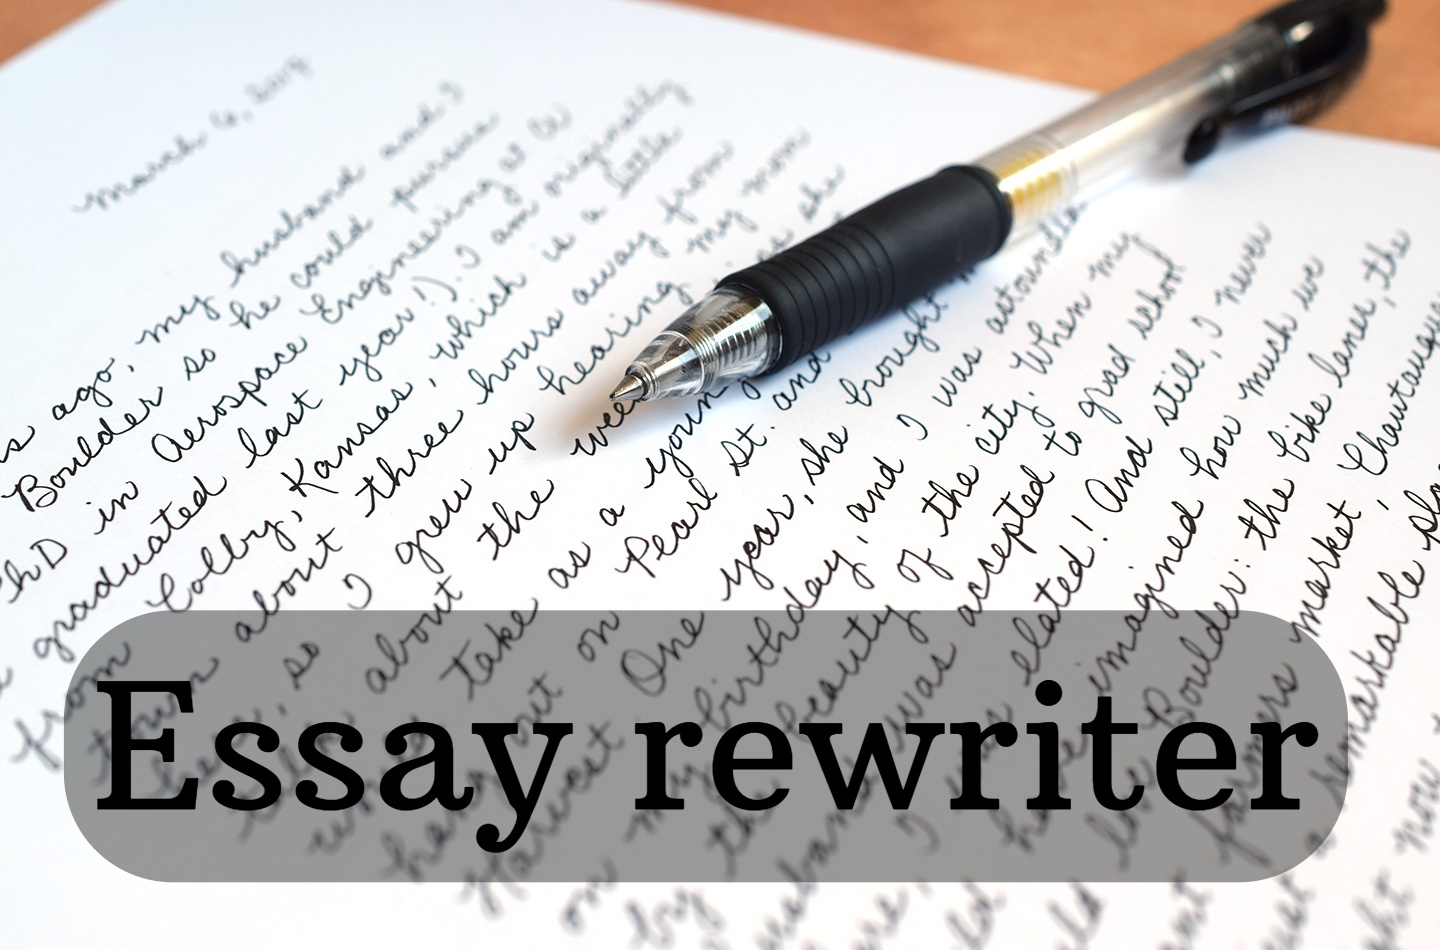 Essay rewriter